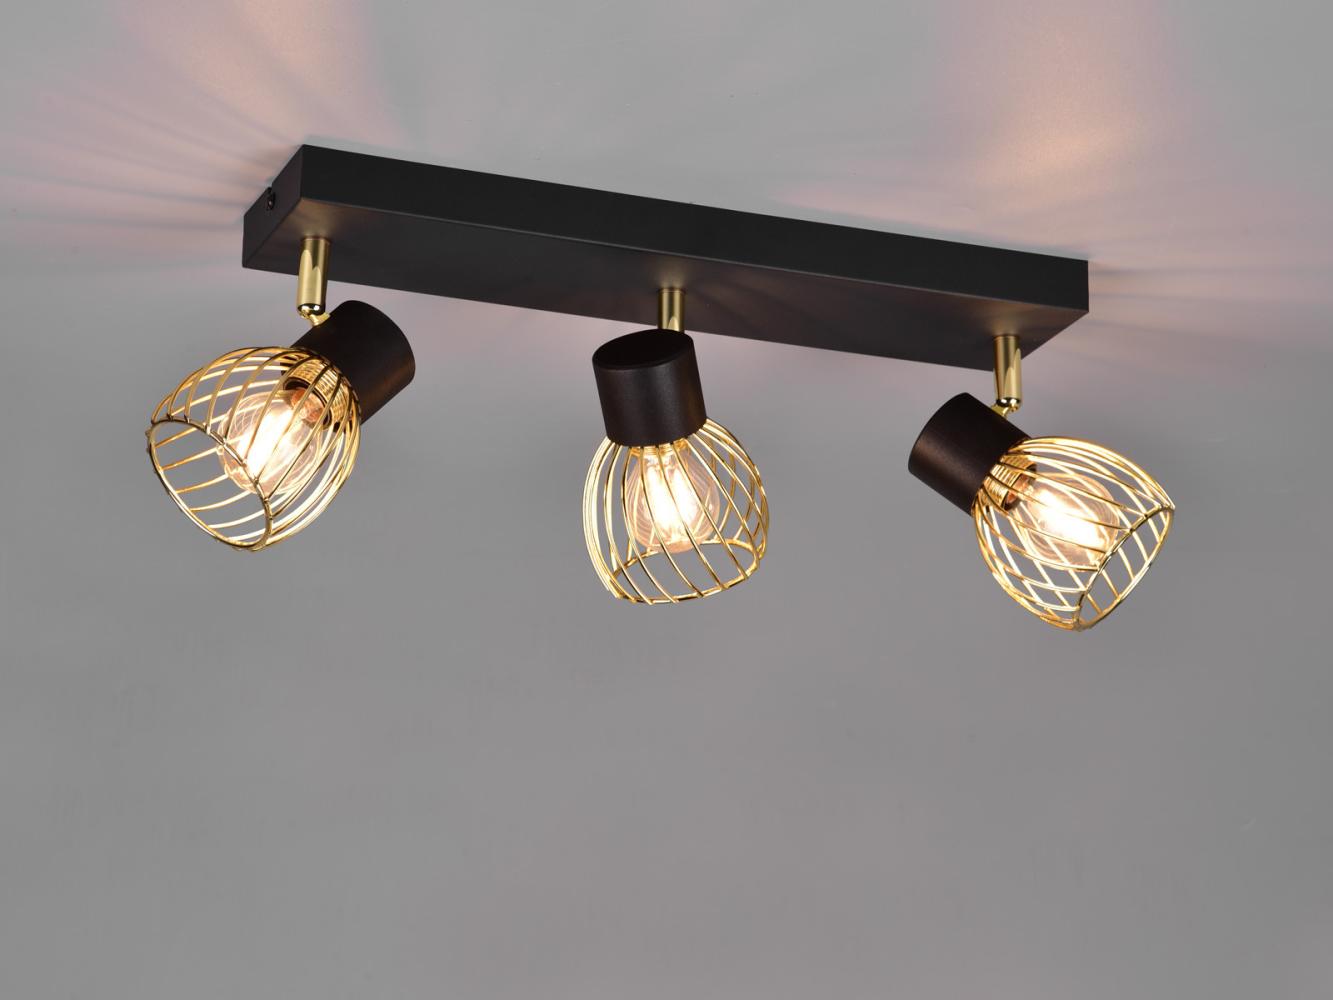 LED Deckenstrahler mit Gitter Lampenschirmen in Gold, Breite 43cm Bild 1